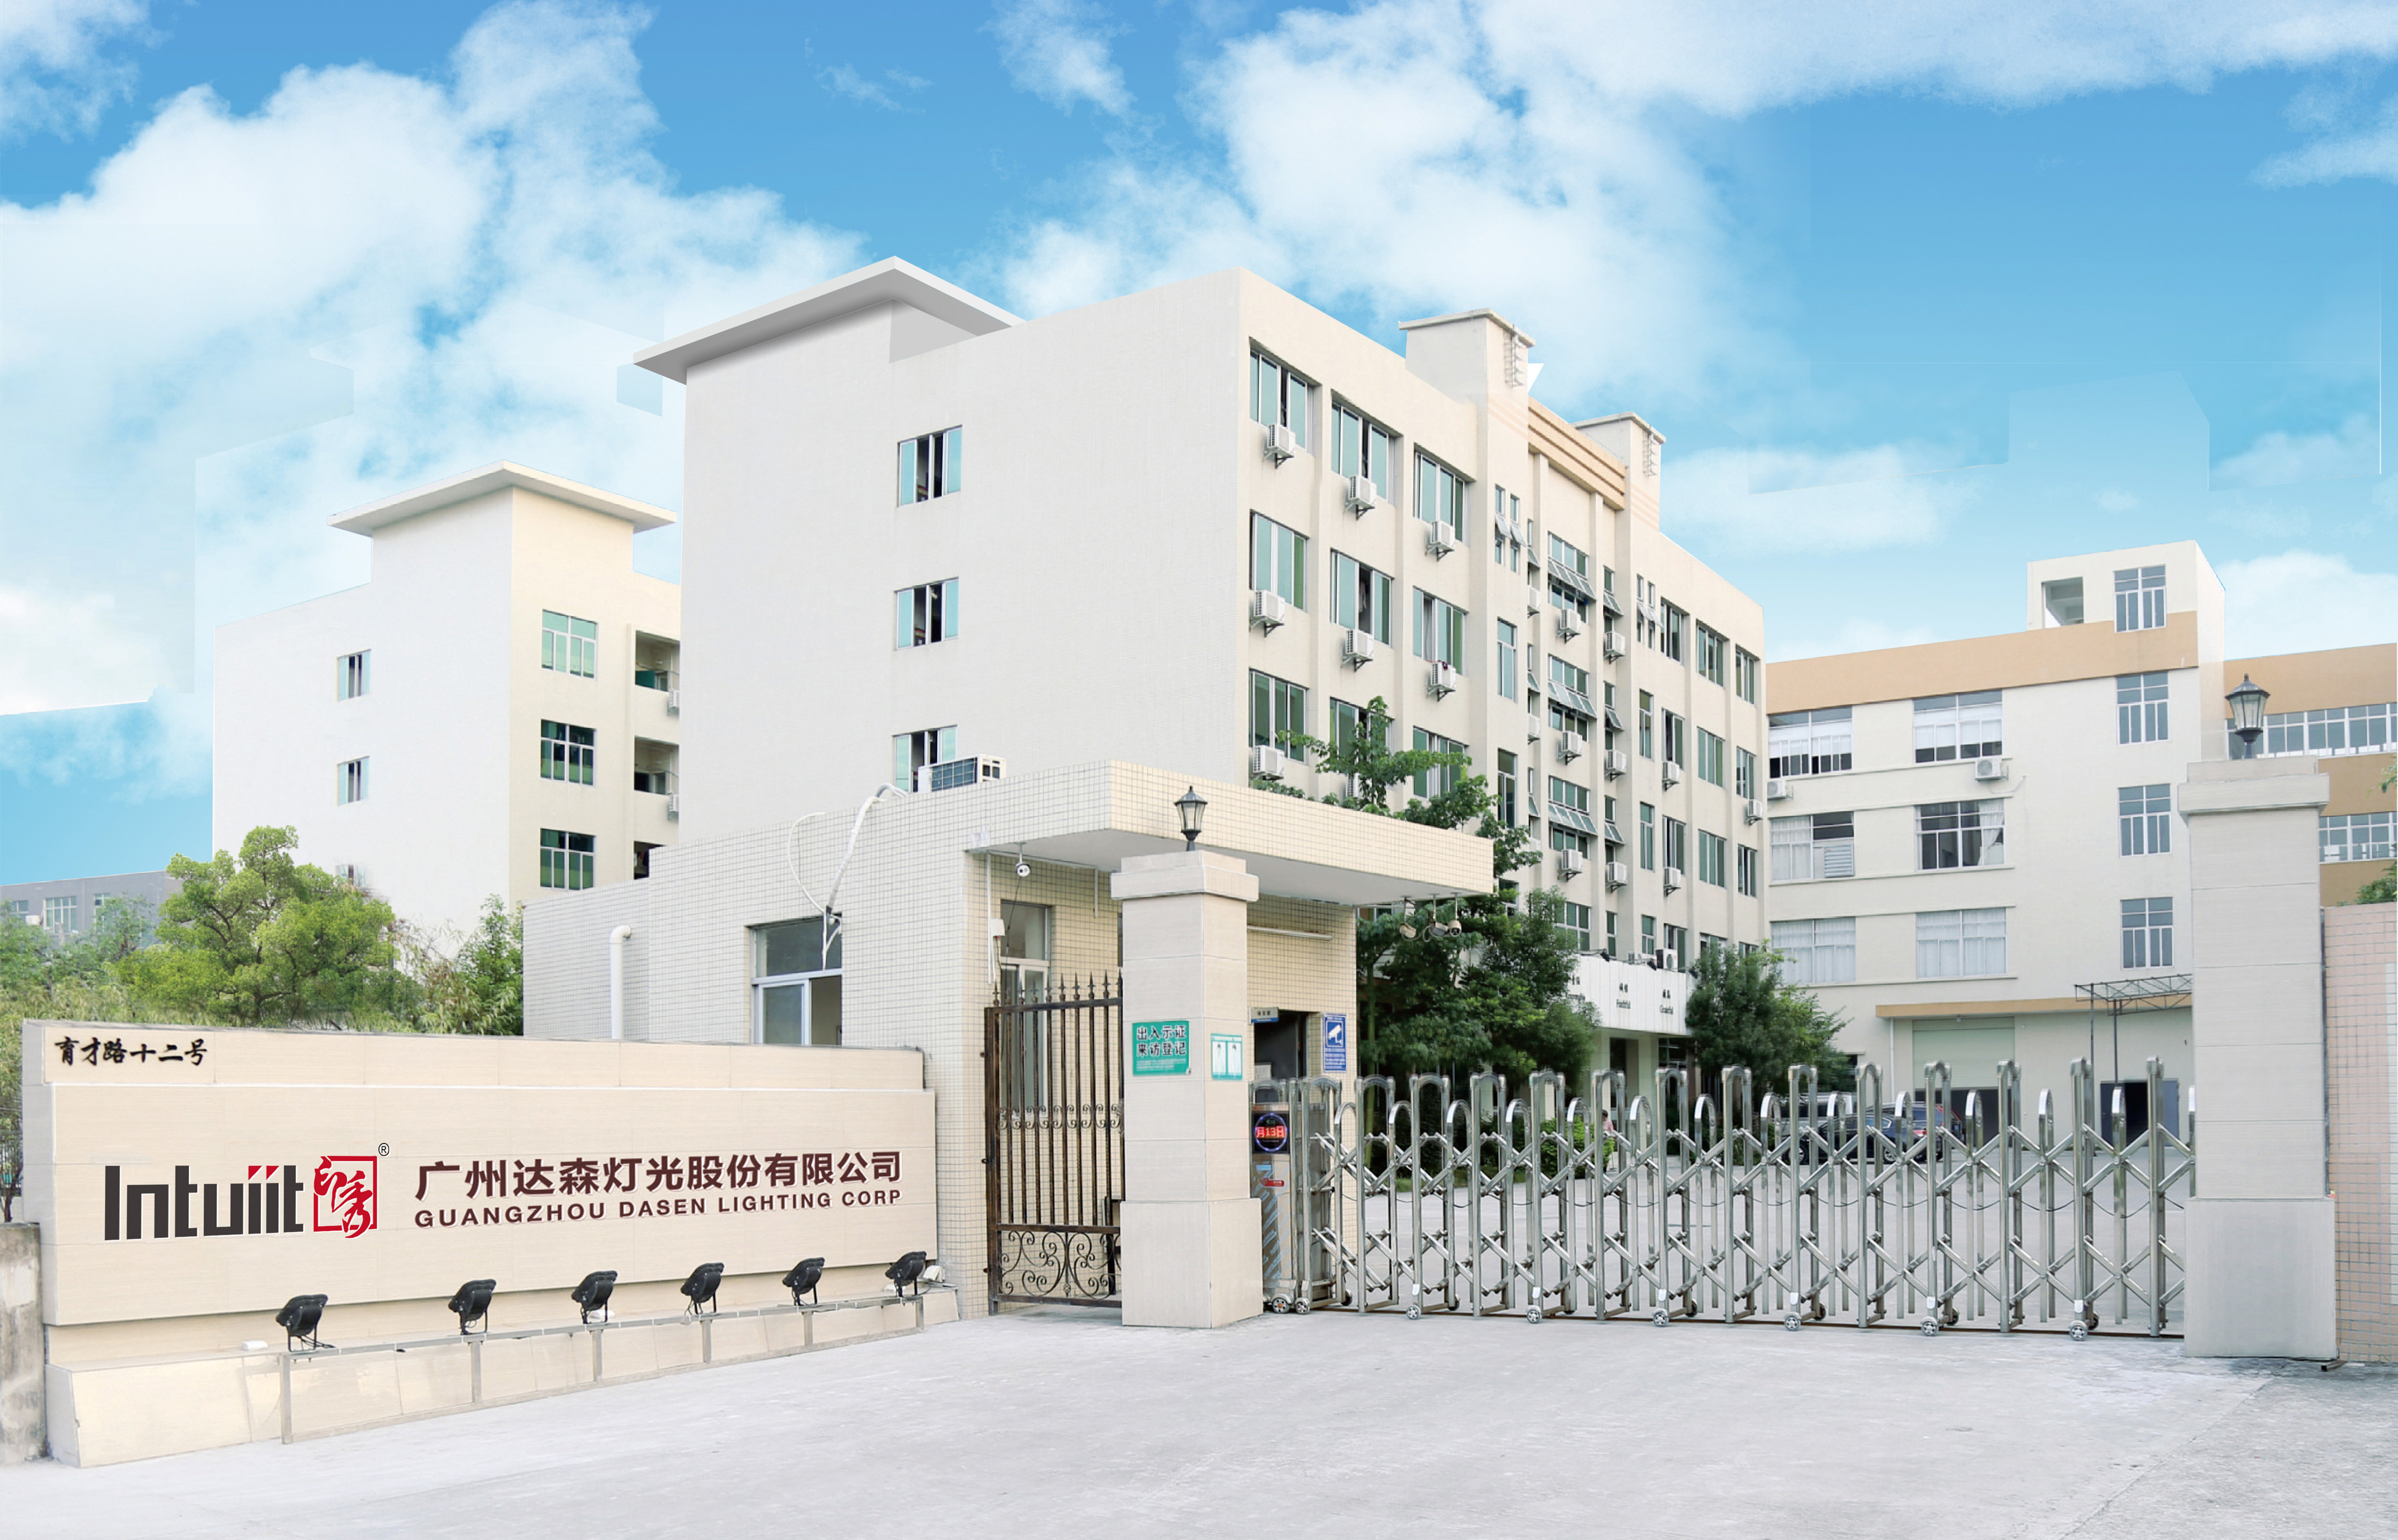 চীন Guangzhou Dasen Lighting Corporation Limited সংস্থা প্রোফাইল